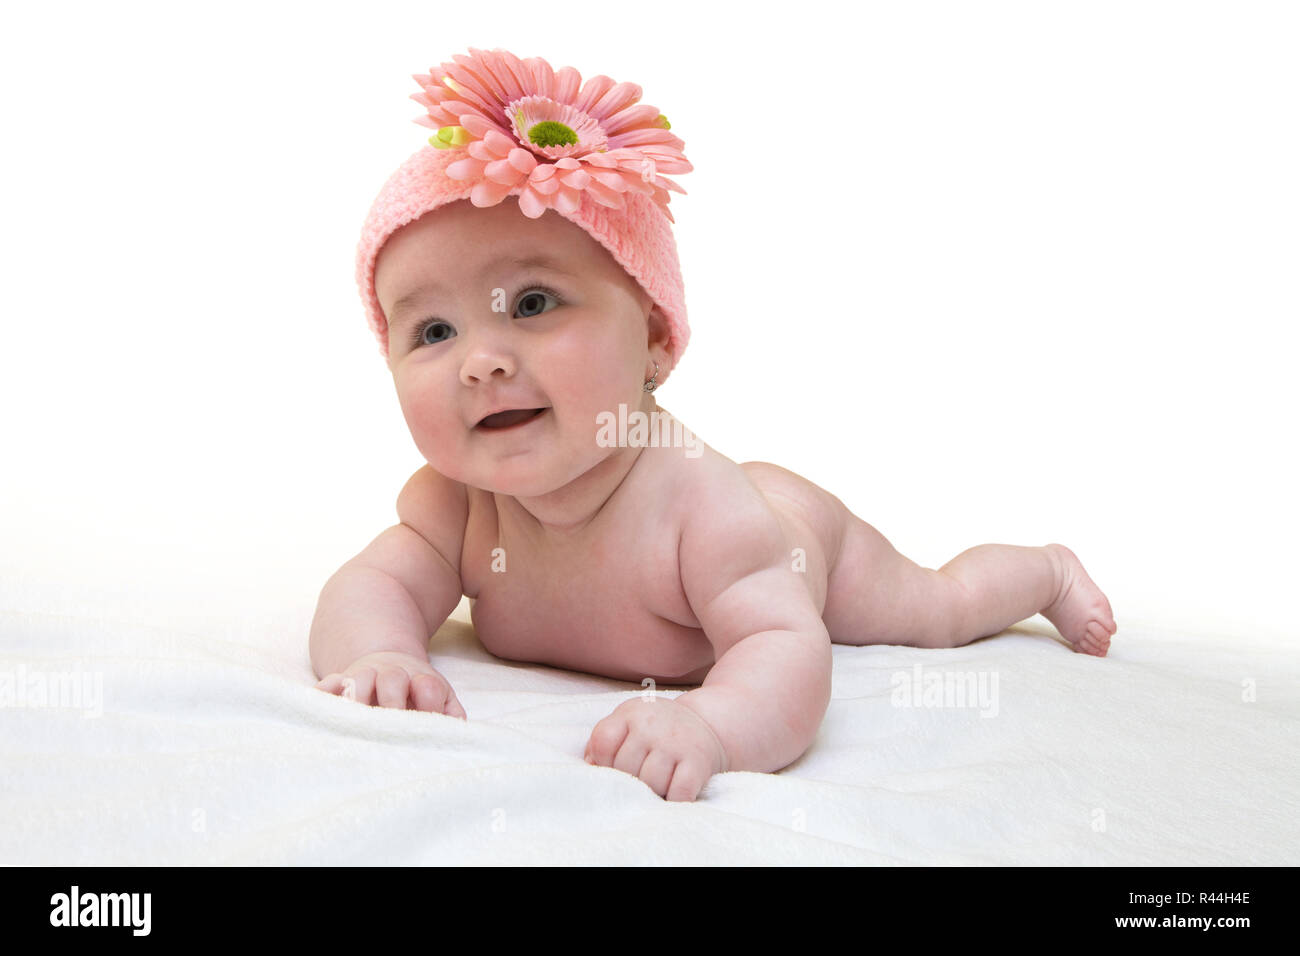 Funny femmina neonata con bella maglia rosa cappuccio su sfondo